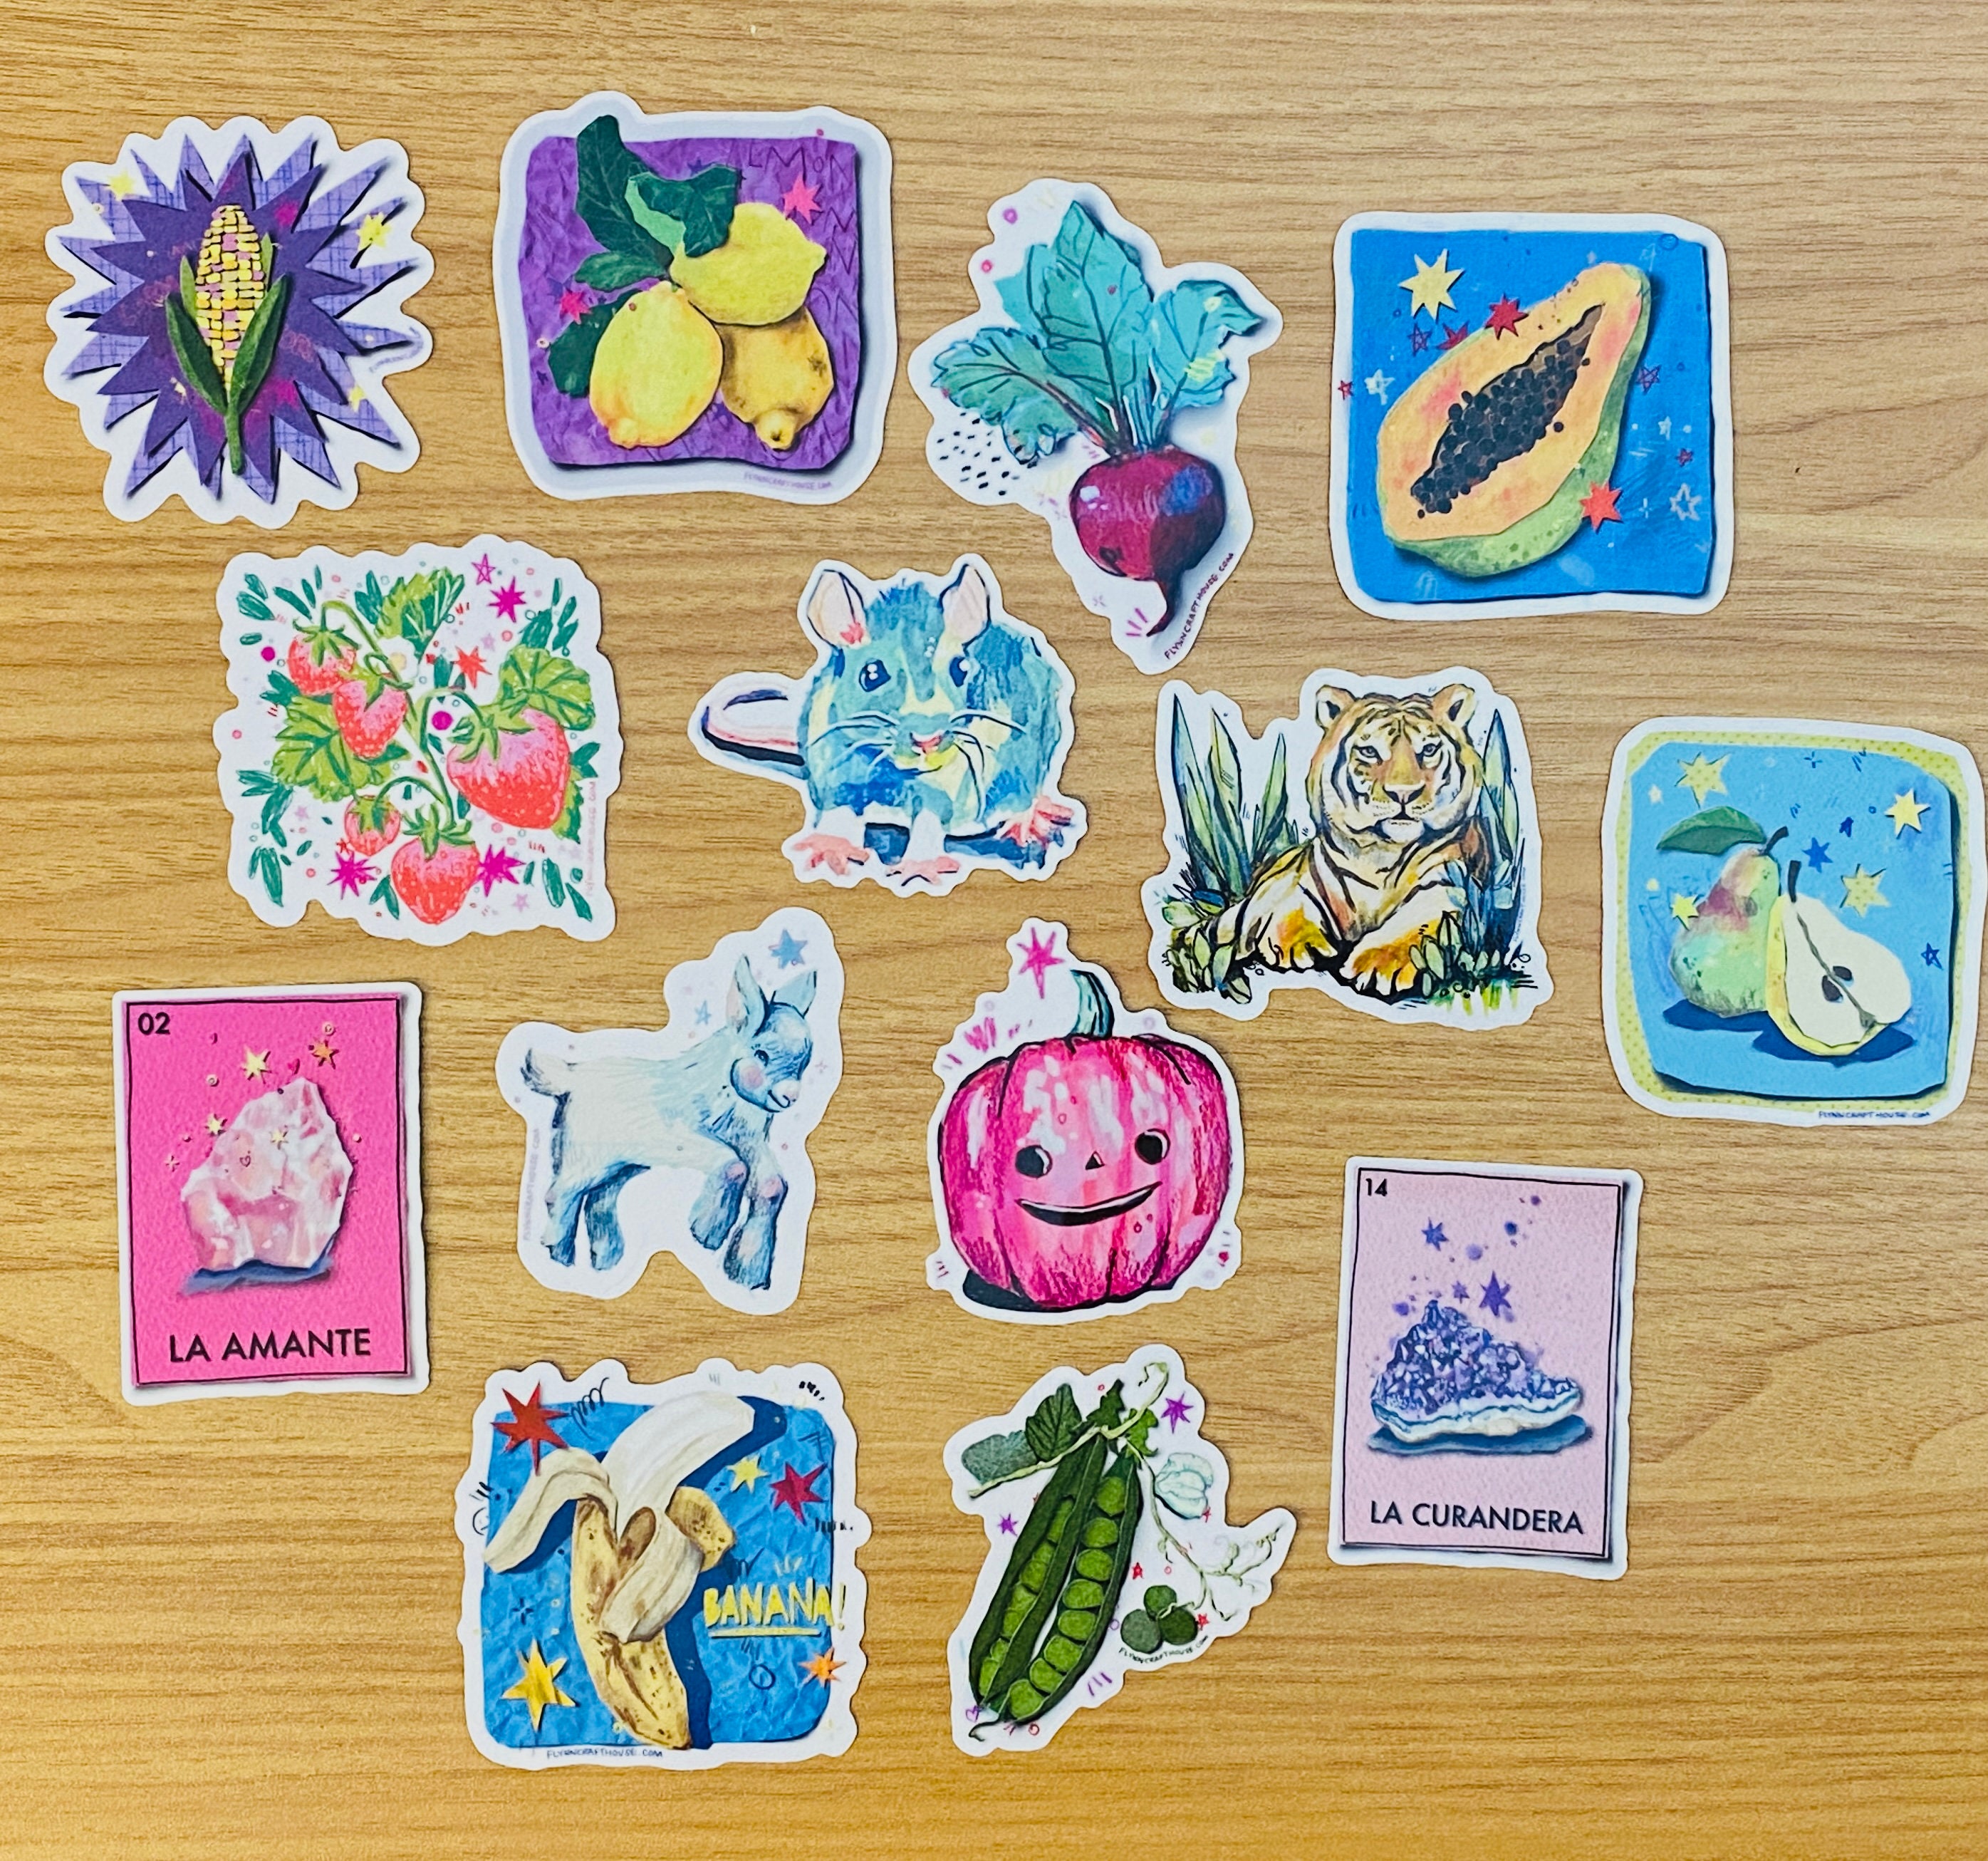 Toddlers Gemstone Sticker Girl Toy Birthday Gift – funnytoddlertoy